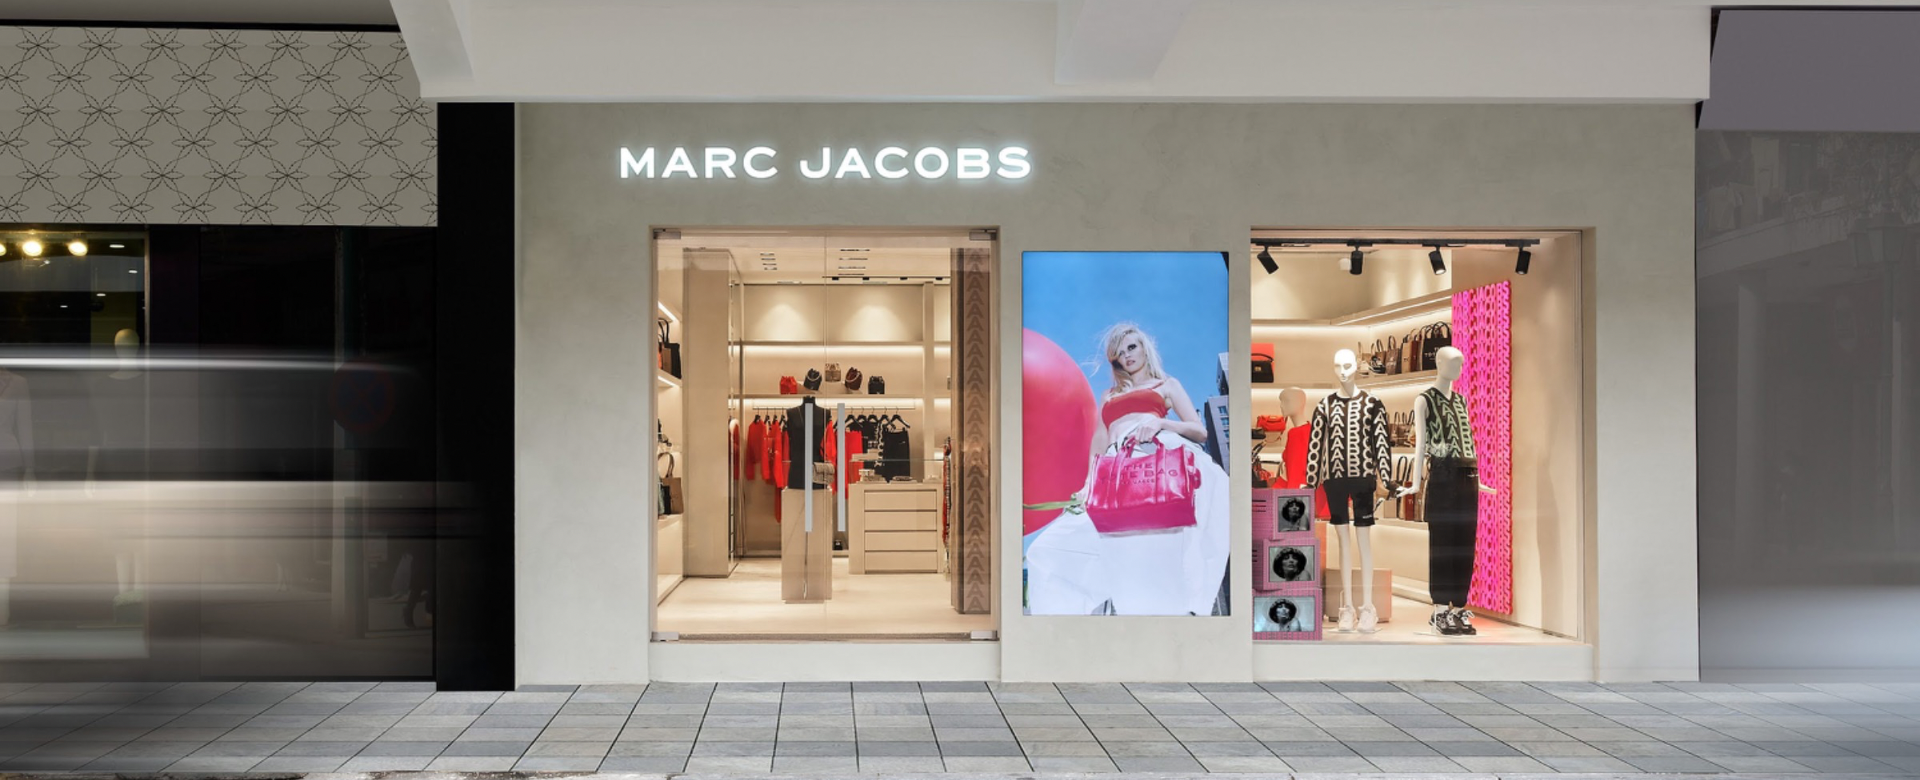 Marc Jacobs khai trương cửa hàng đầu tiên tại Hà Nội